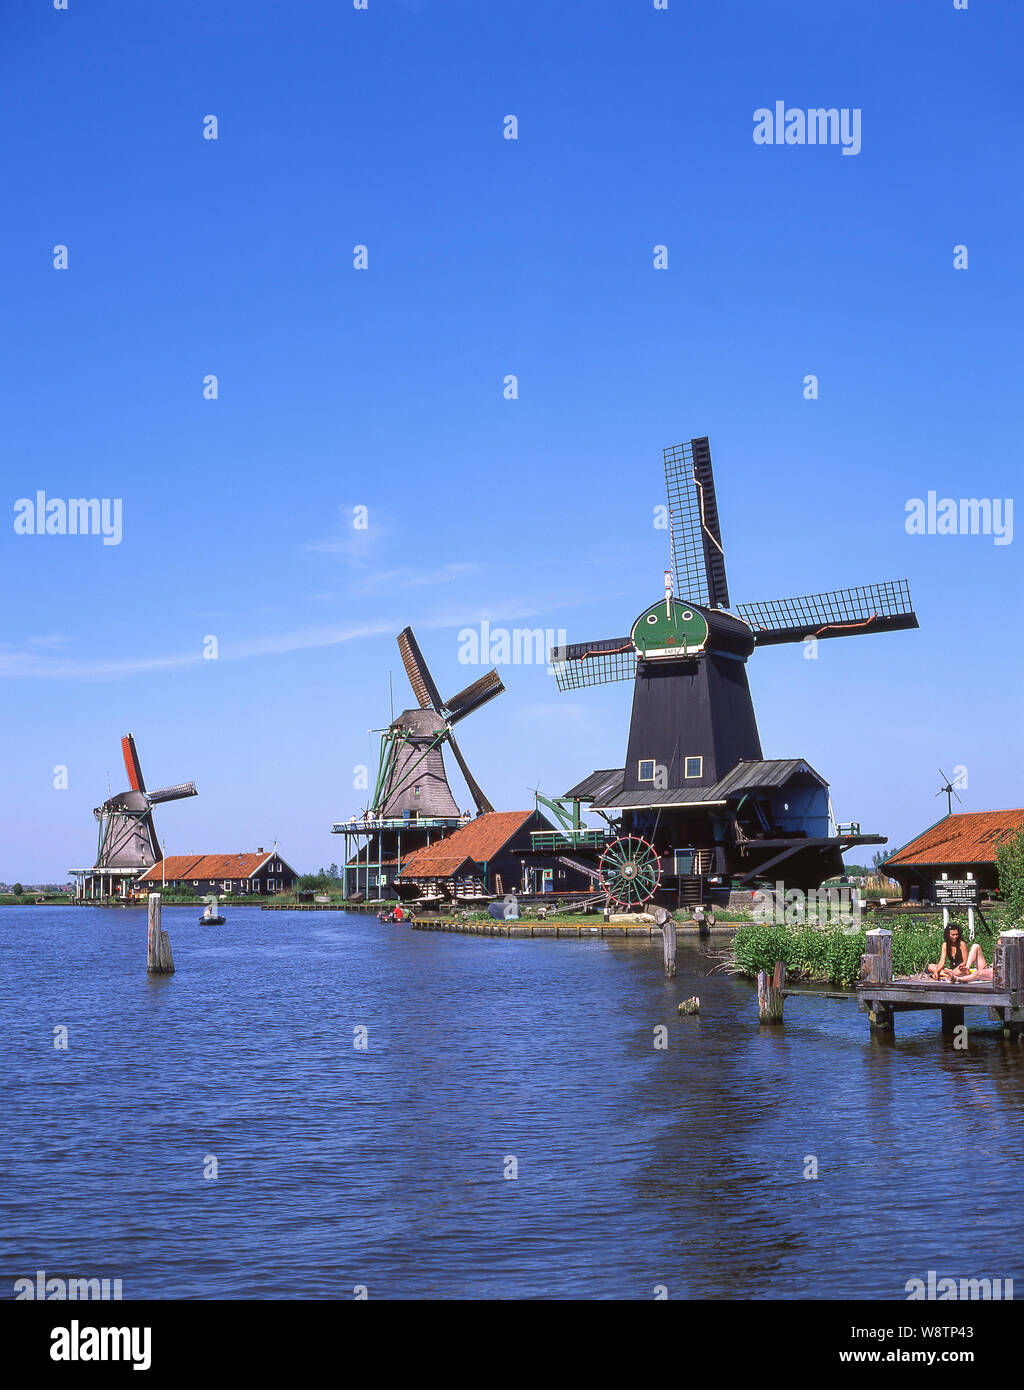 Les moulins à vent de Zaanse Schans, Zaandam, Noord-Holland, Royaume des Pays-Bas Banque D'Images